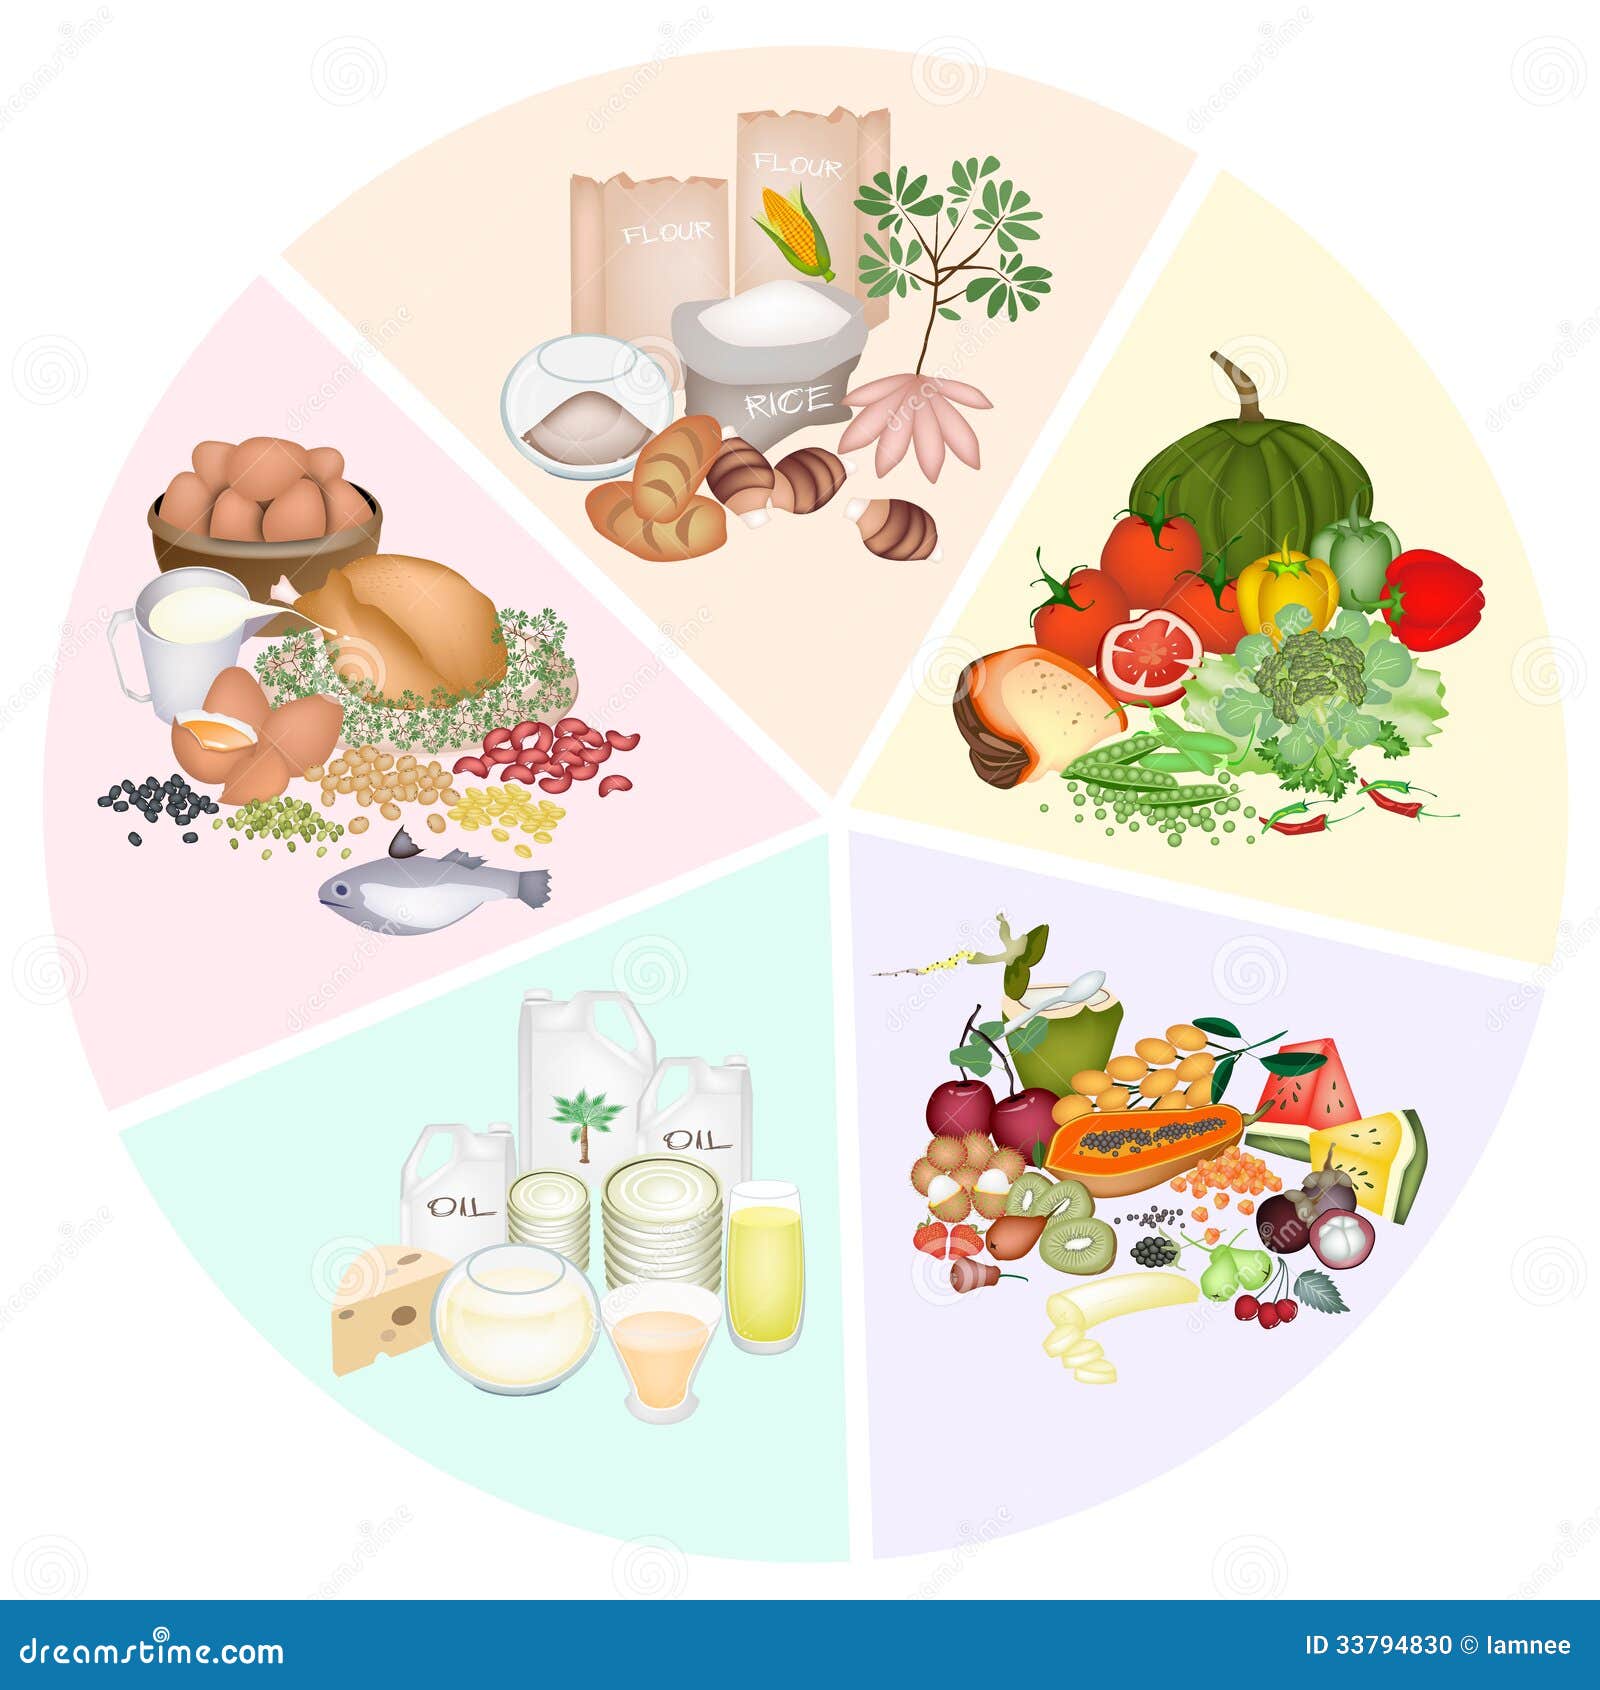 不同种类食物的营养元素不同,主要有蛋白质、